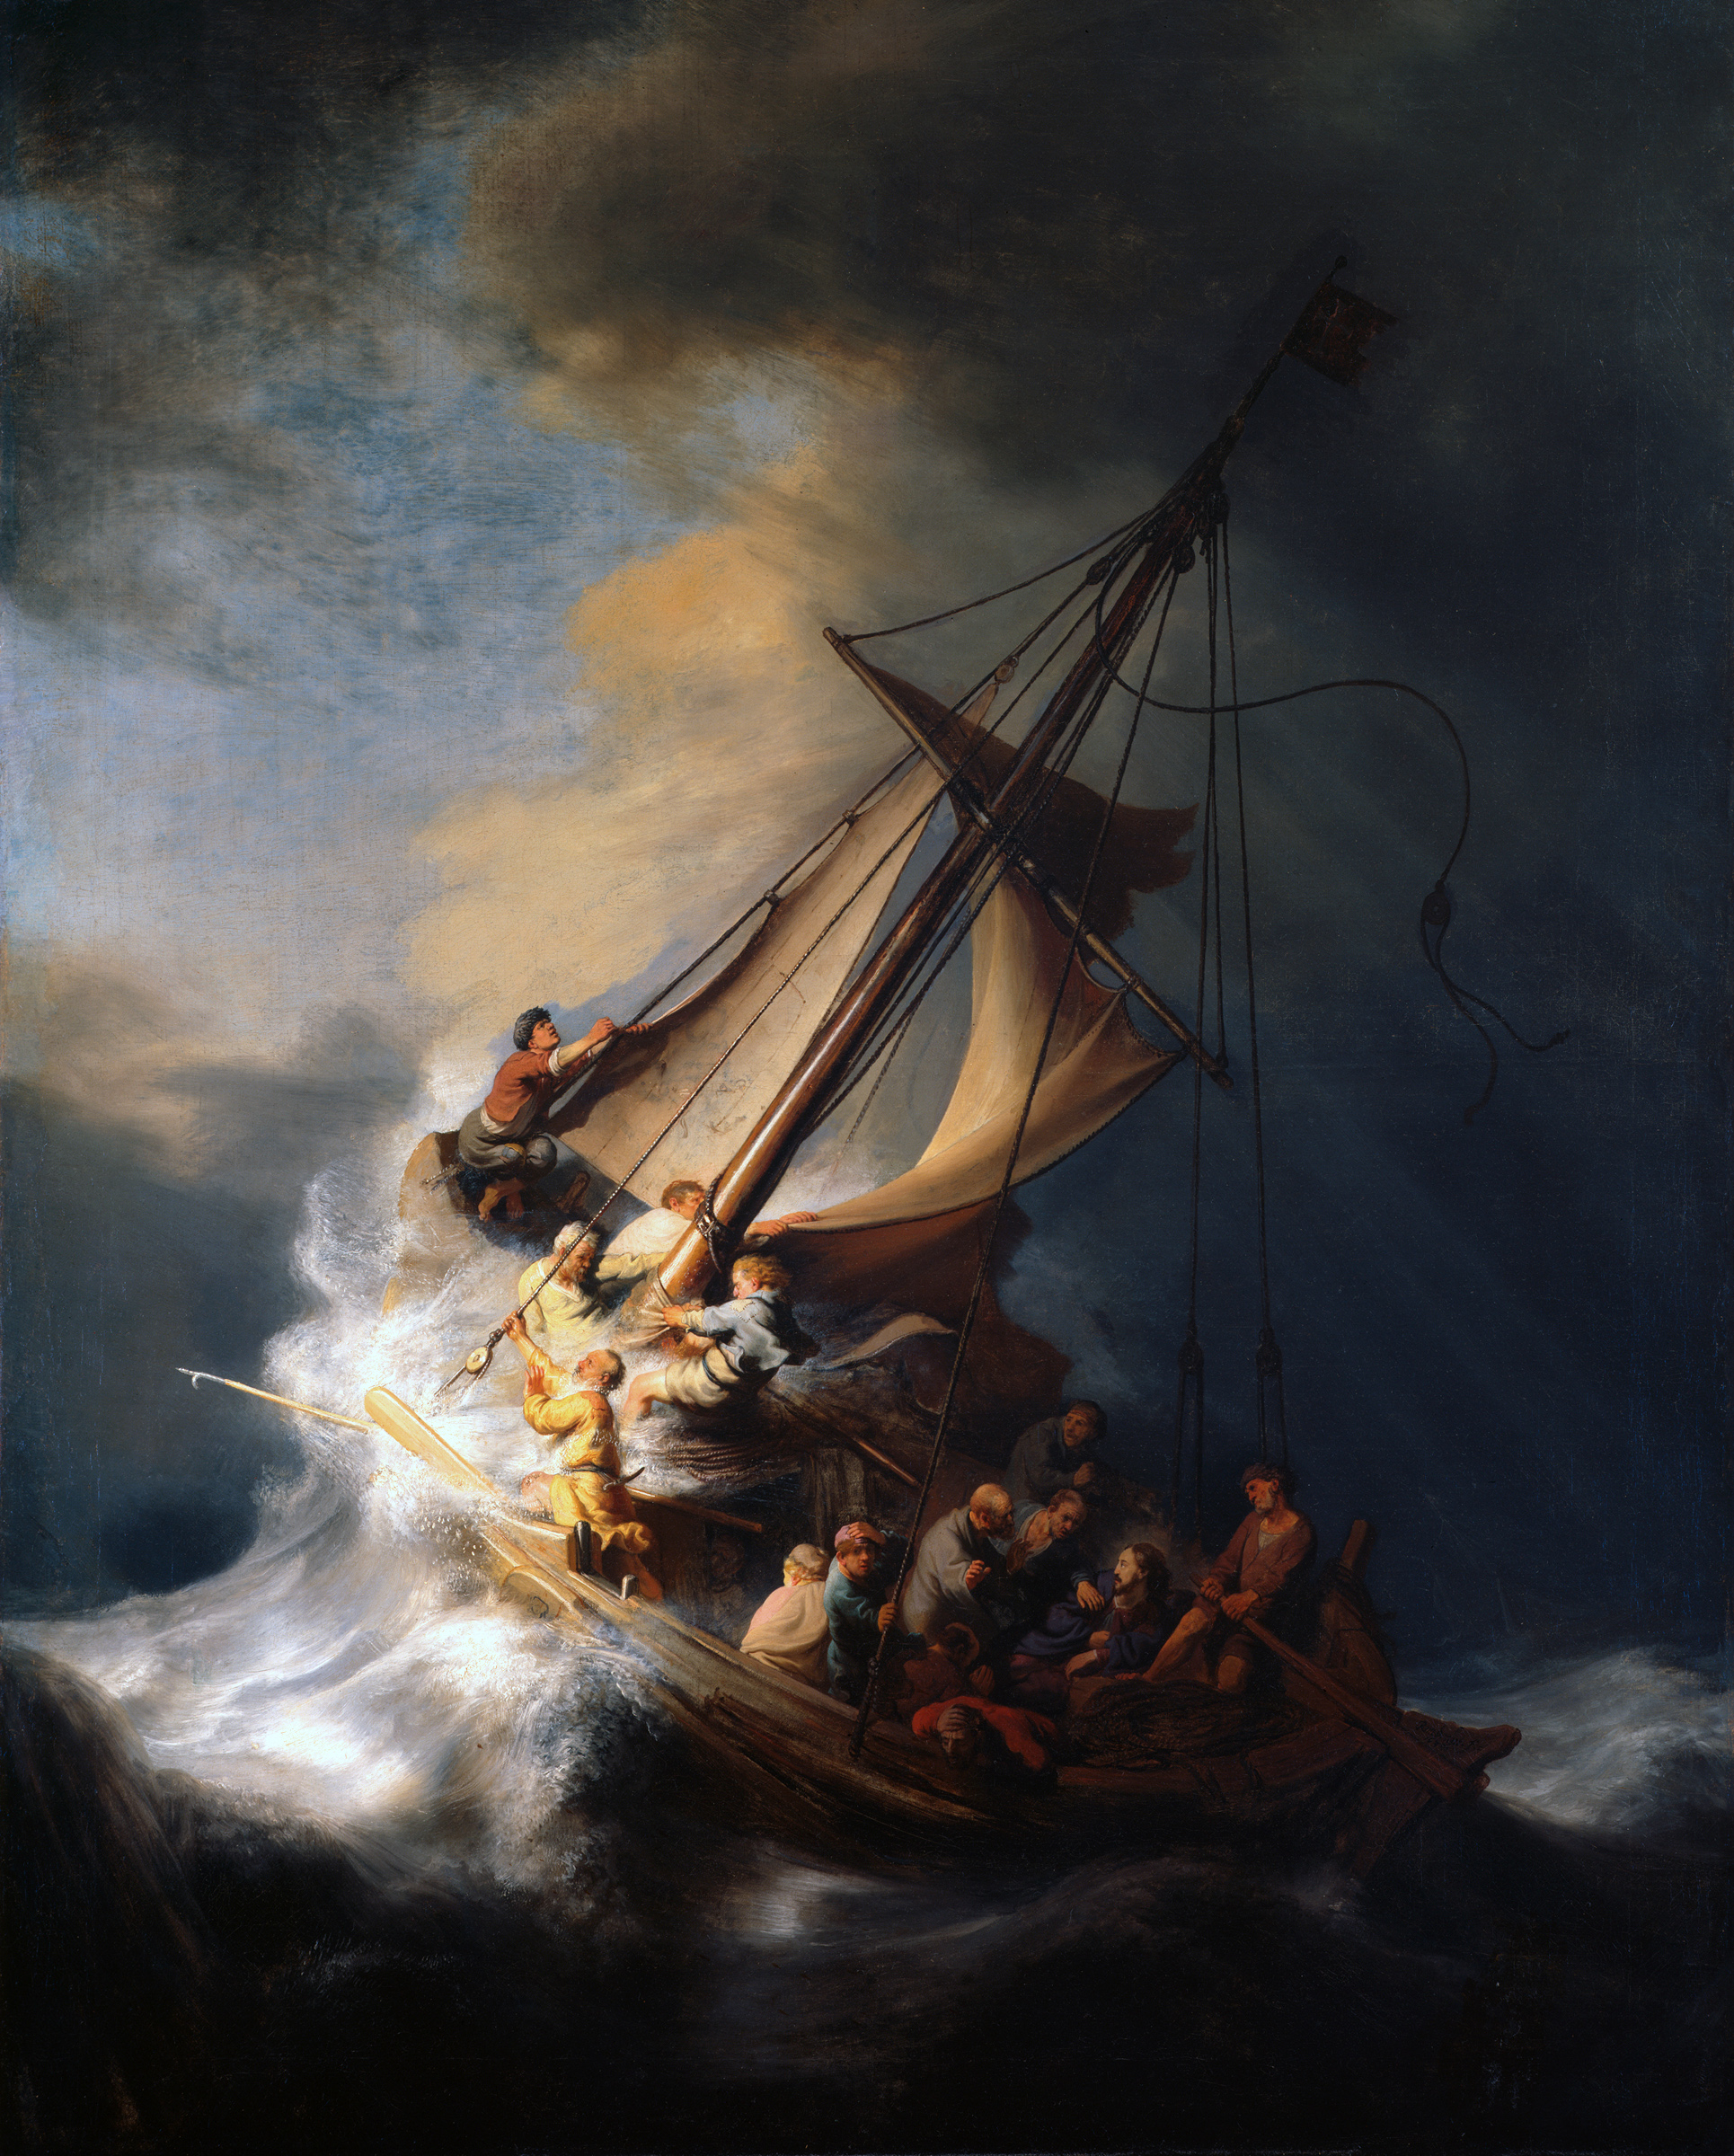 La tormenta en el mar de Galilea by Rembrandt van Rijn - 1633 - 160 x 128 cm Robada